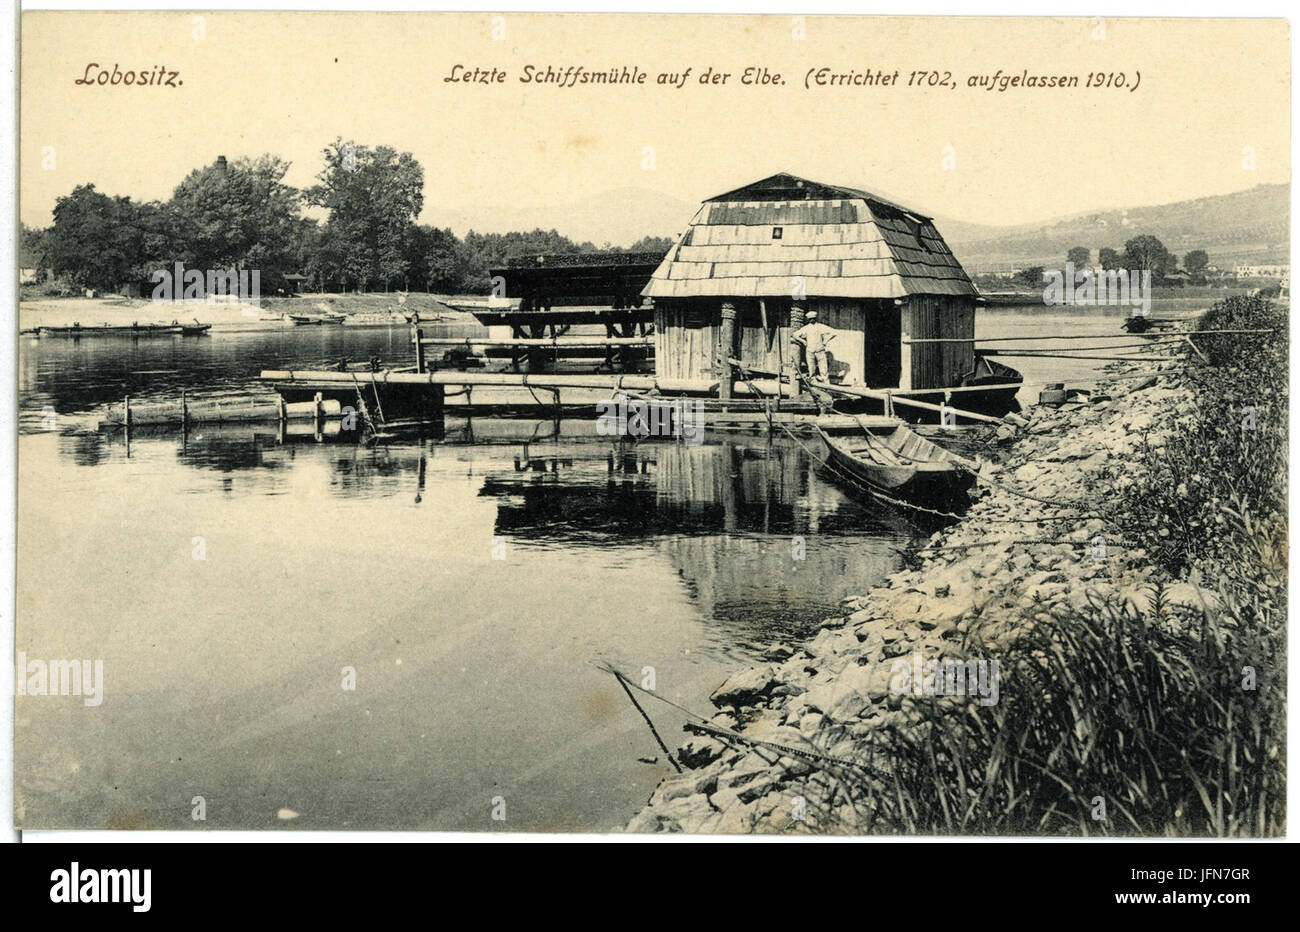 03909-Lobositz-1903-Letzte Schiffsmühle auf der Elbe seit 1702-Brück & Sohn Kunstverlag Stock Photo